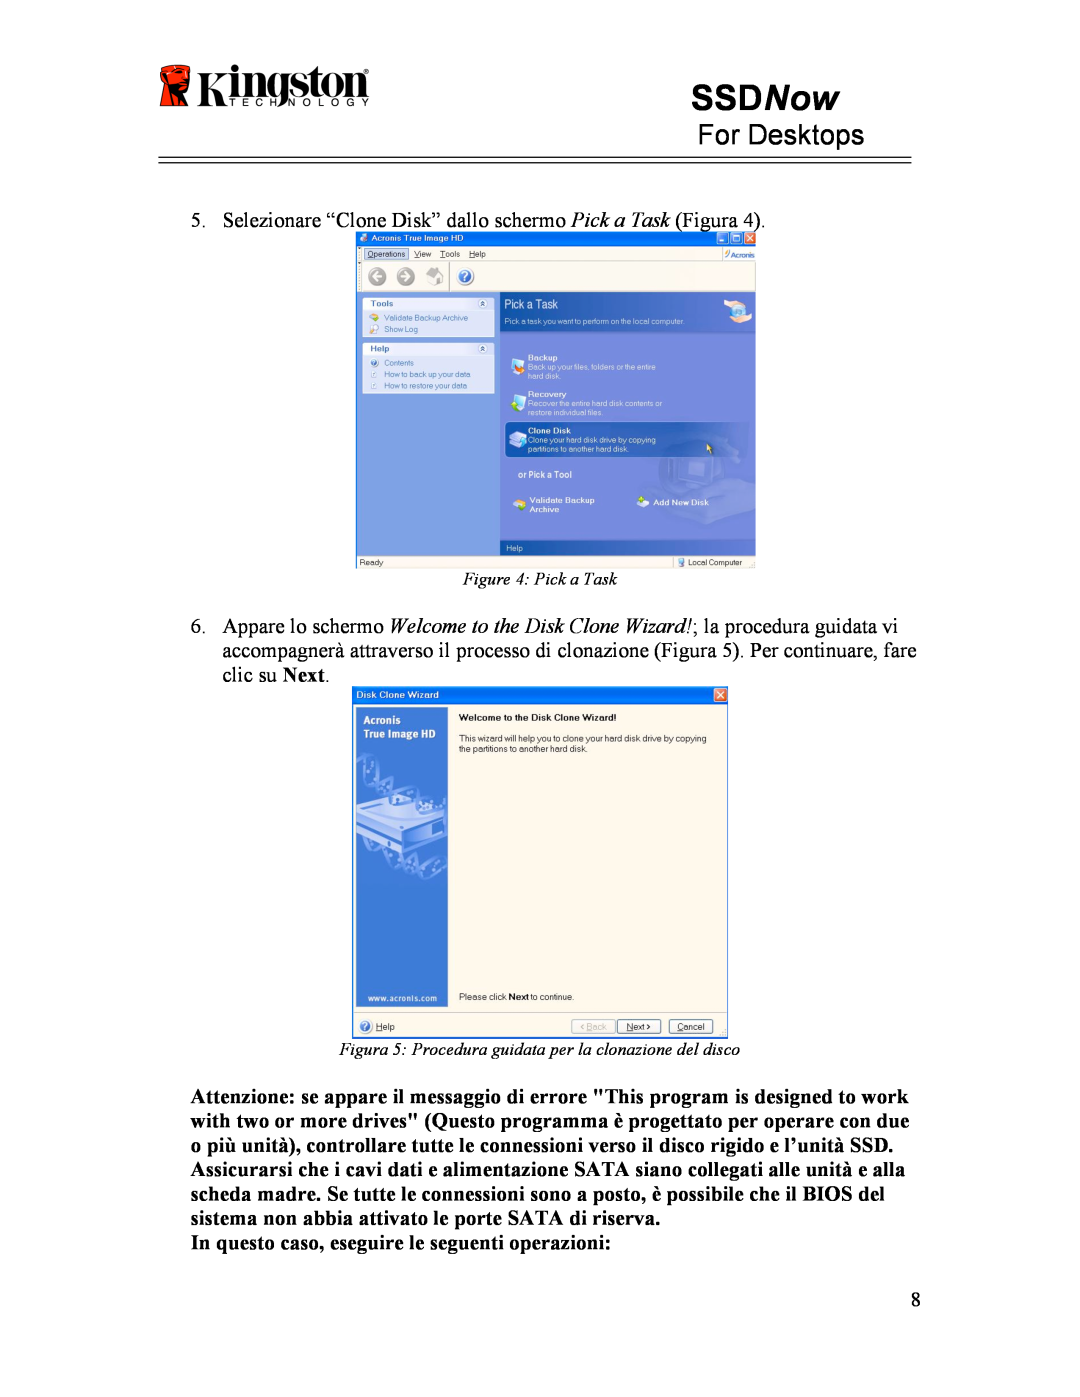 Kingston Technology 07-16-2009 manual SSDNow, For Desktops, In questo caso, eseguire le seguenti operazioni 